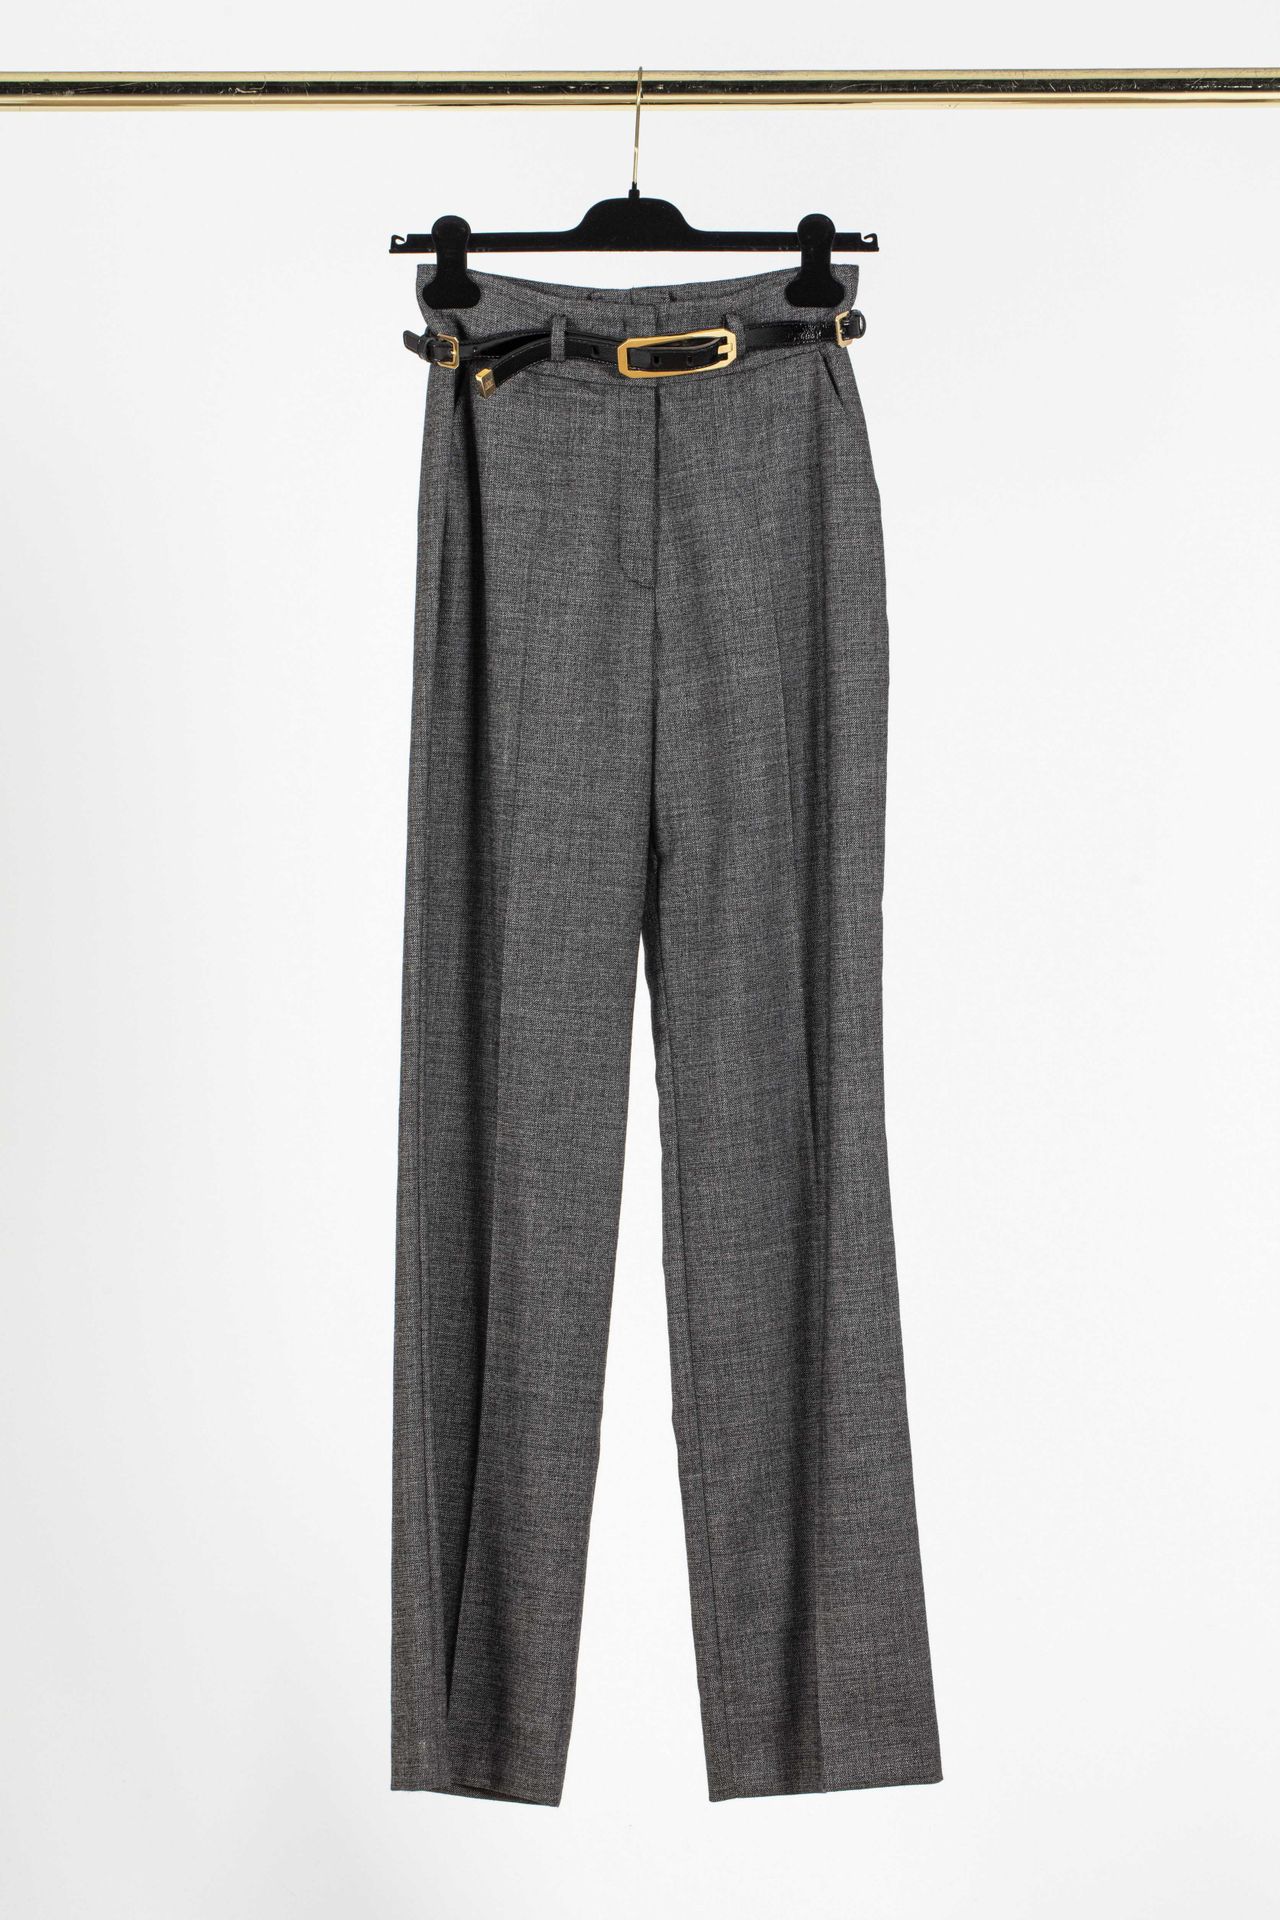 Null ESACADA：灰色斑点羊毛宽腿裤，黑色漆皮腰带，有标志。

T.34